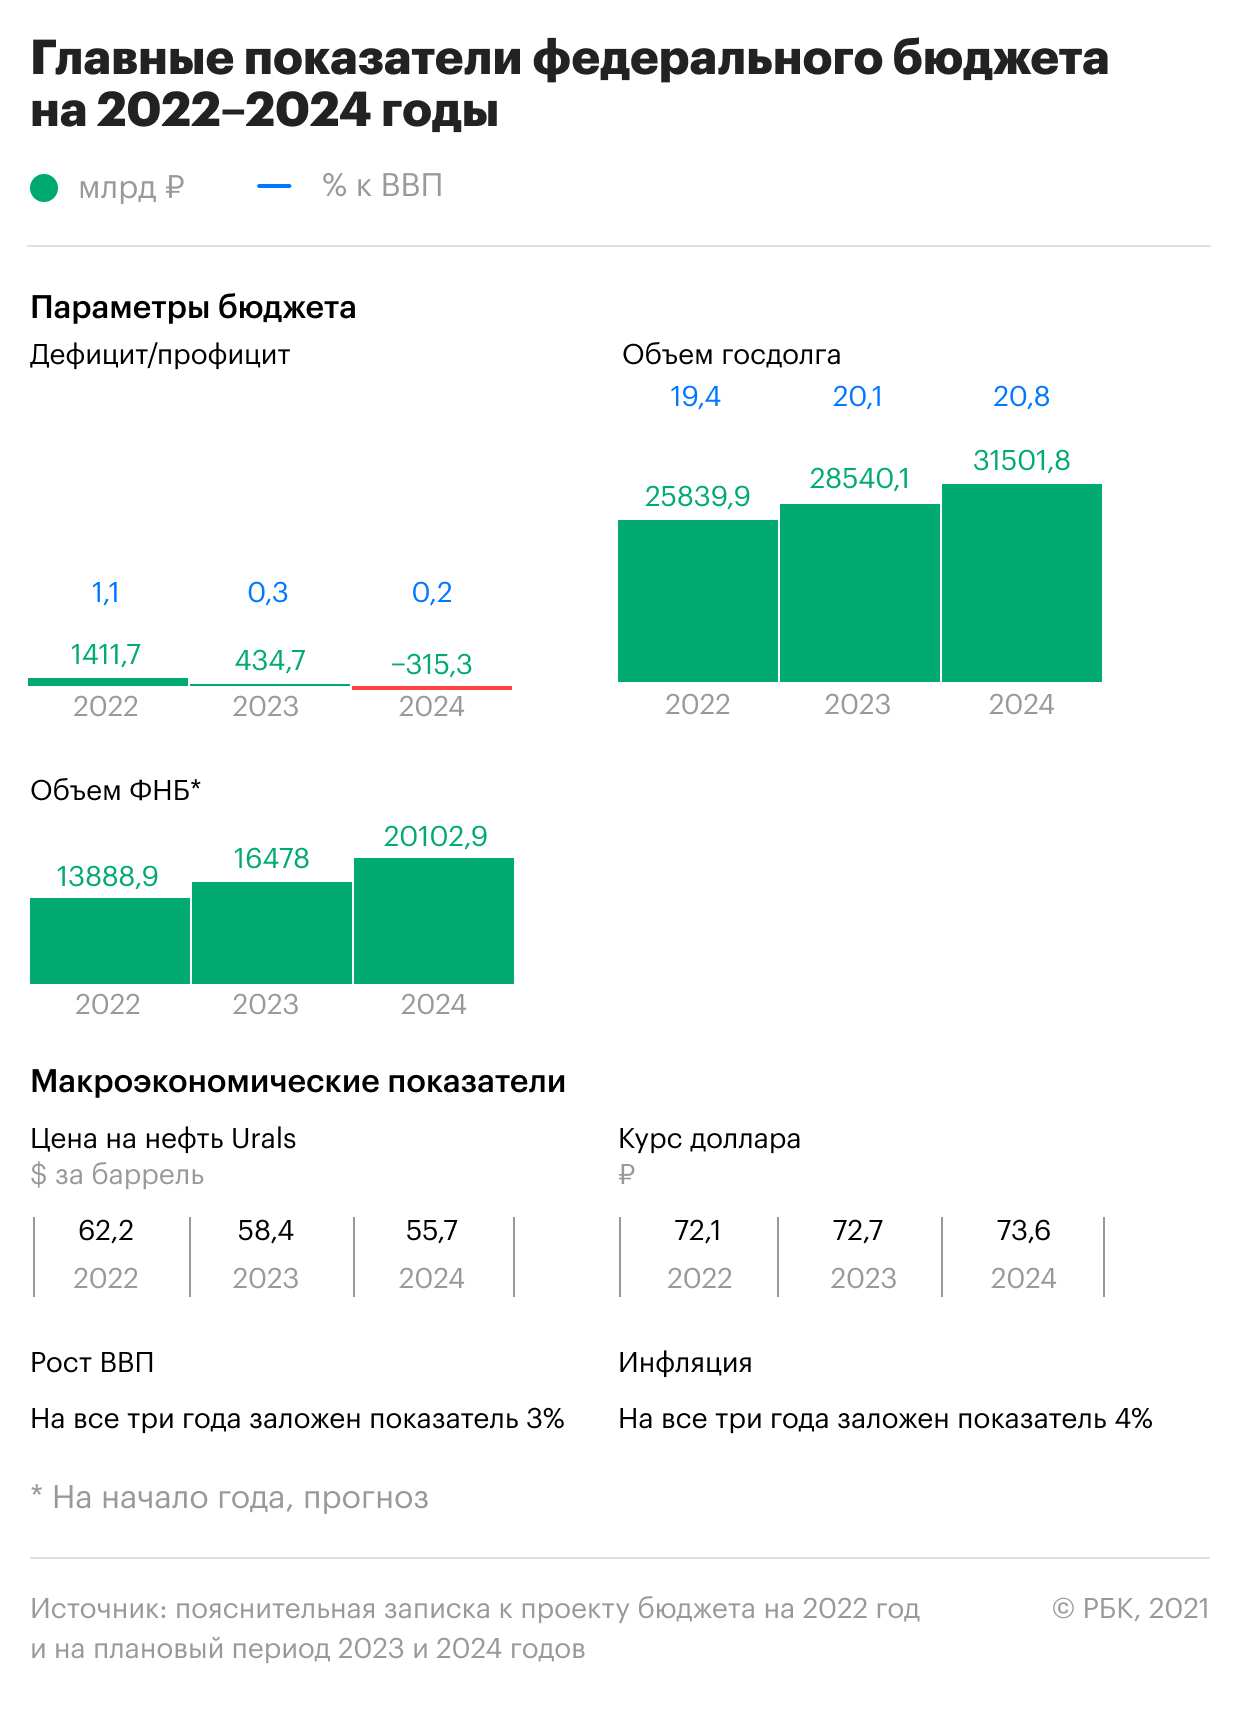 Главные цифры будущего российского бюджета. Инфографика